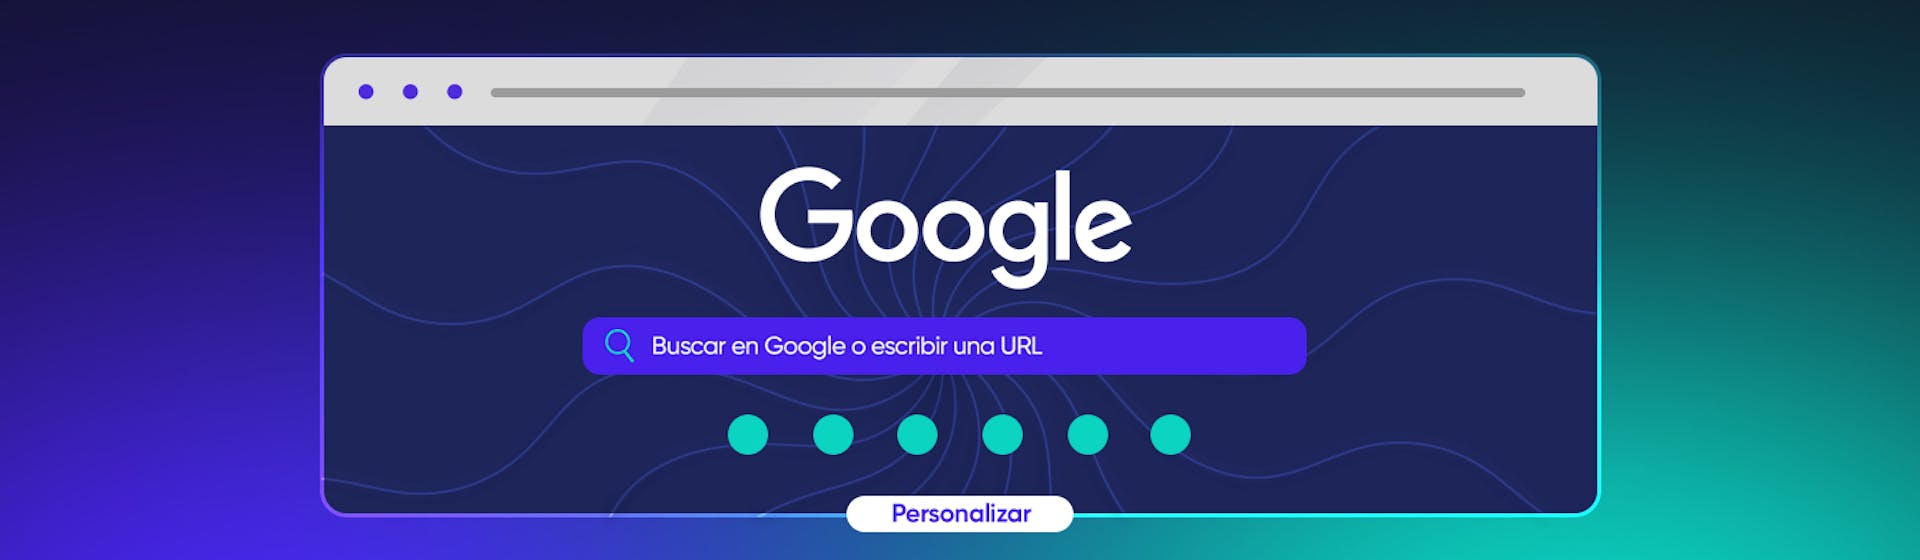 Te enseñamos cómo personalizar Google Chrome para transformar tu experiencia online